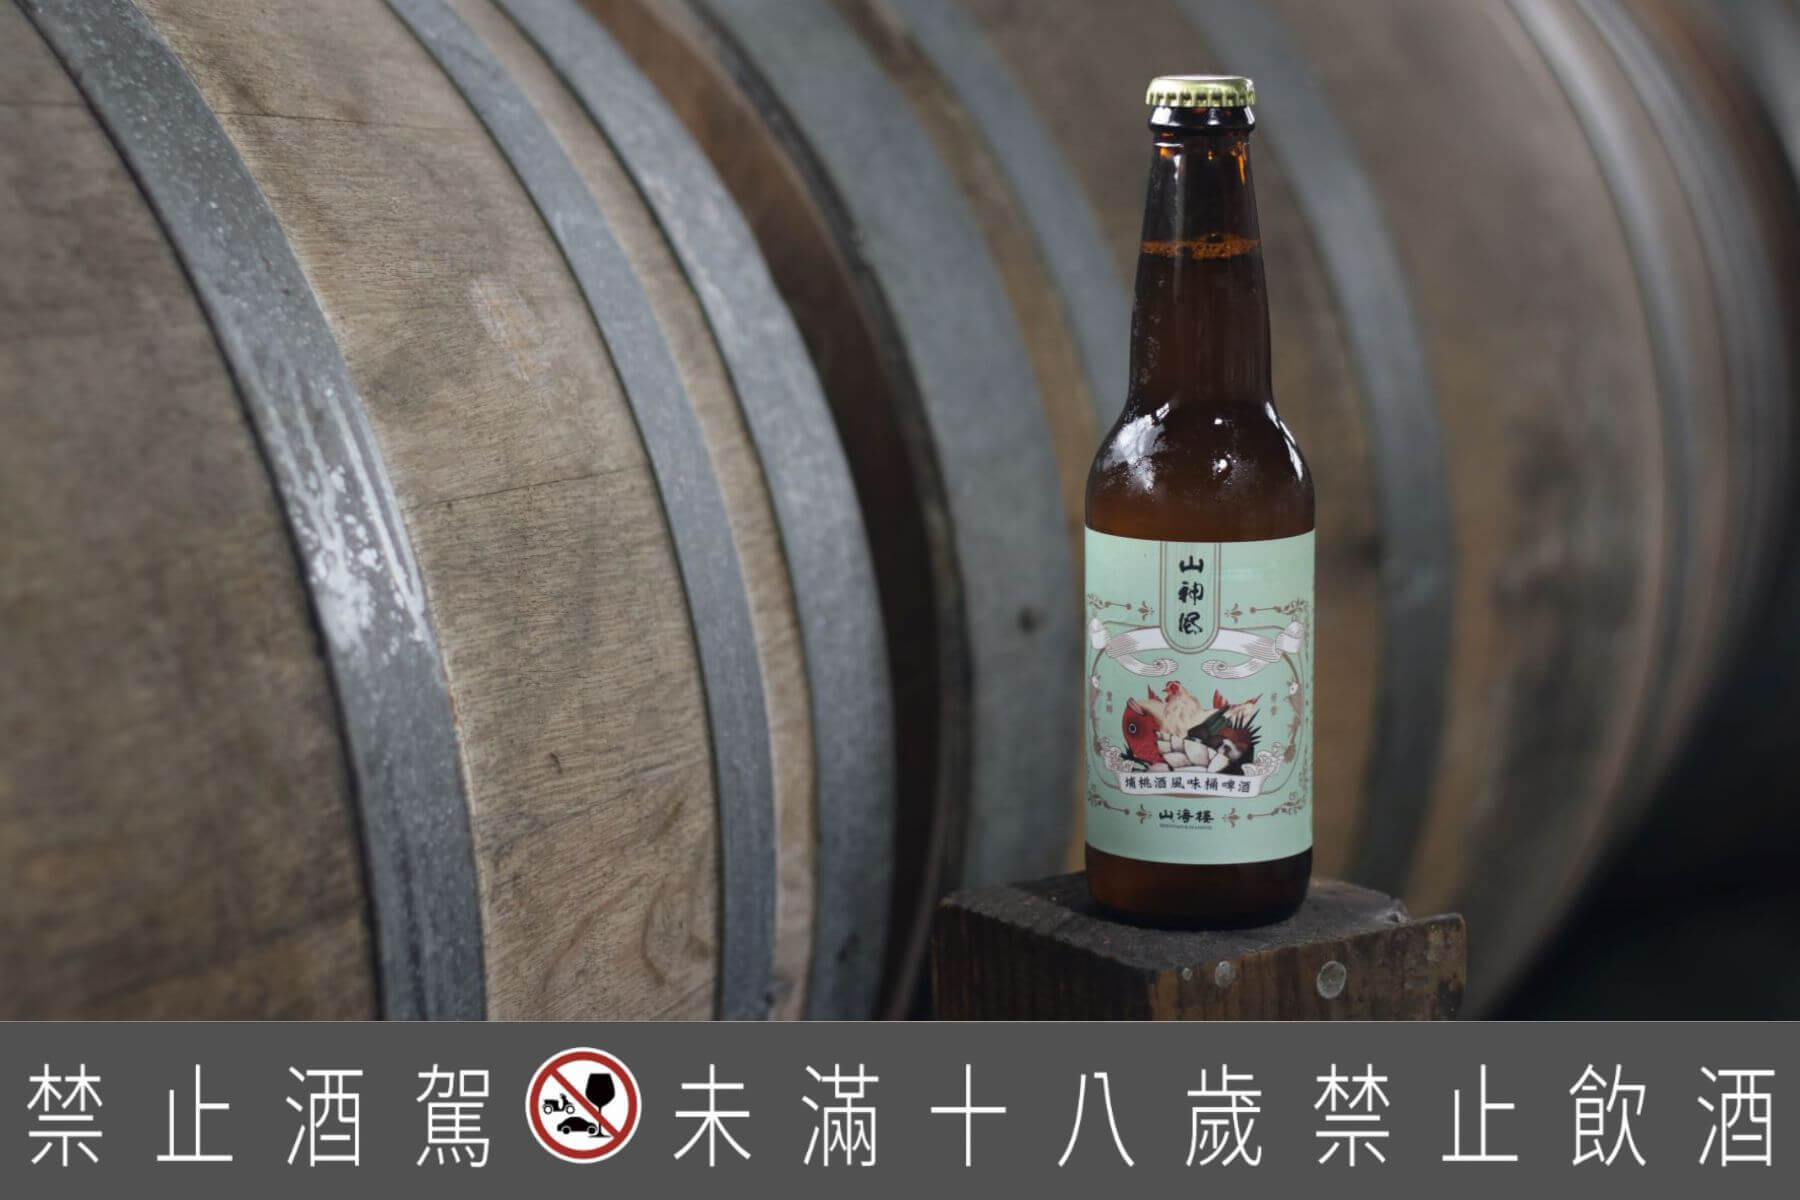 「山神風埔桃酒風味桶啤酒」：桶陳精釀獨特的台味風貌